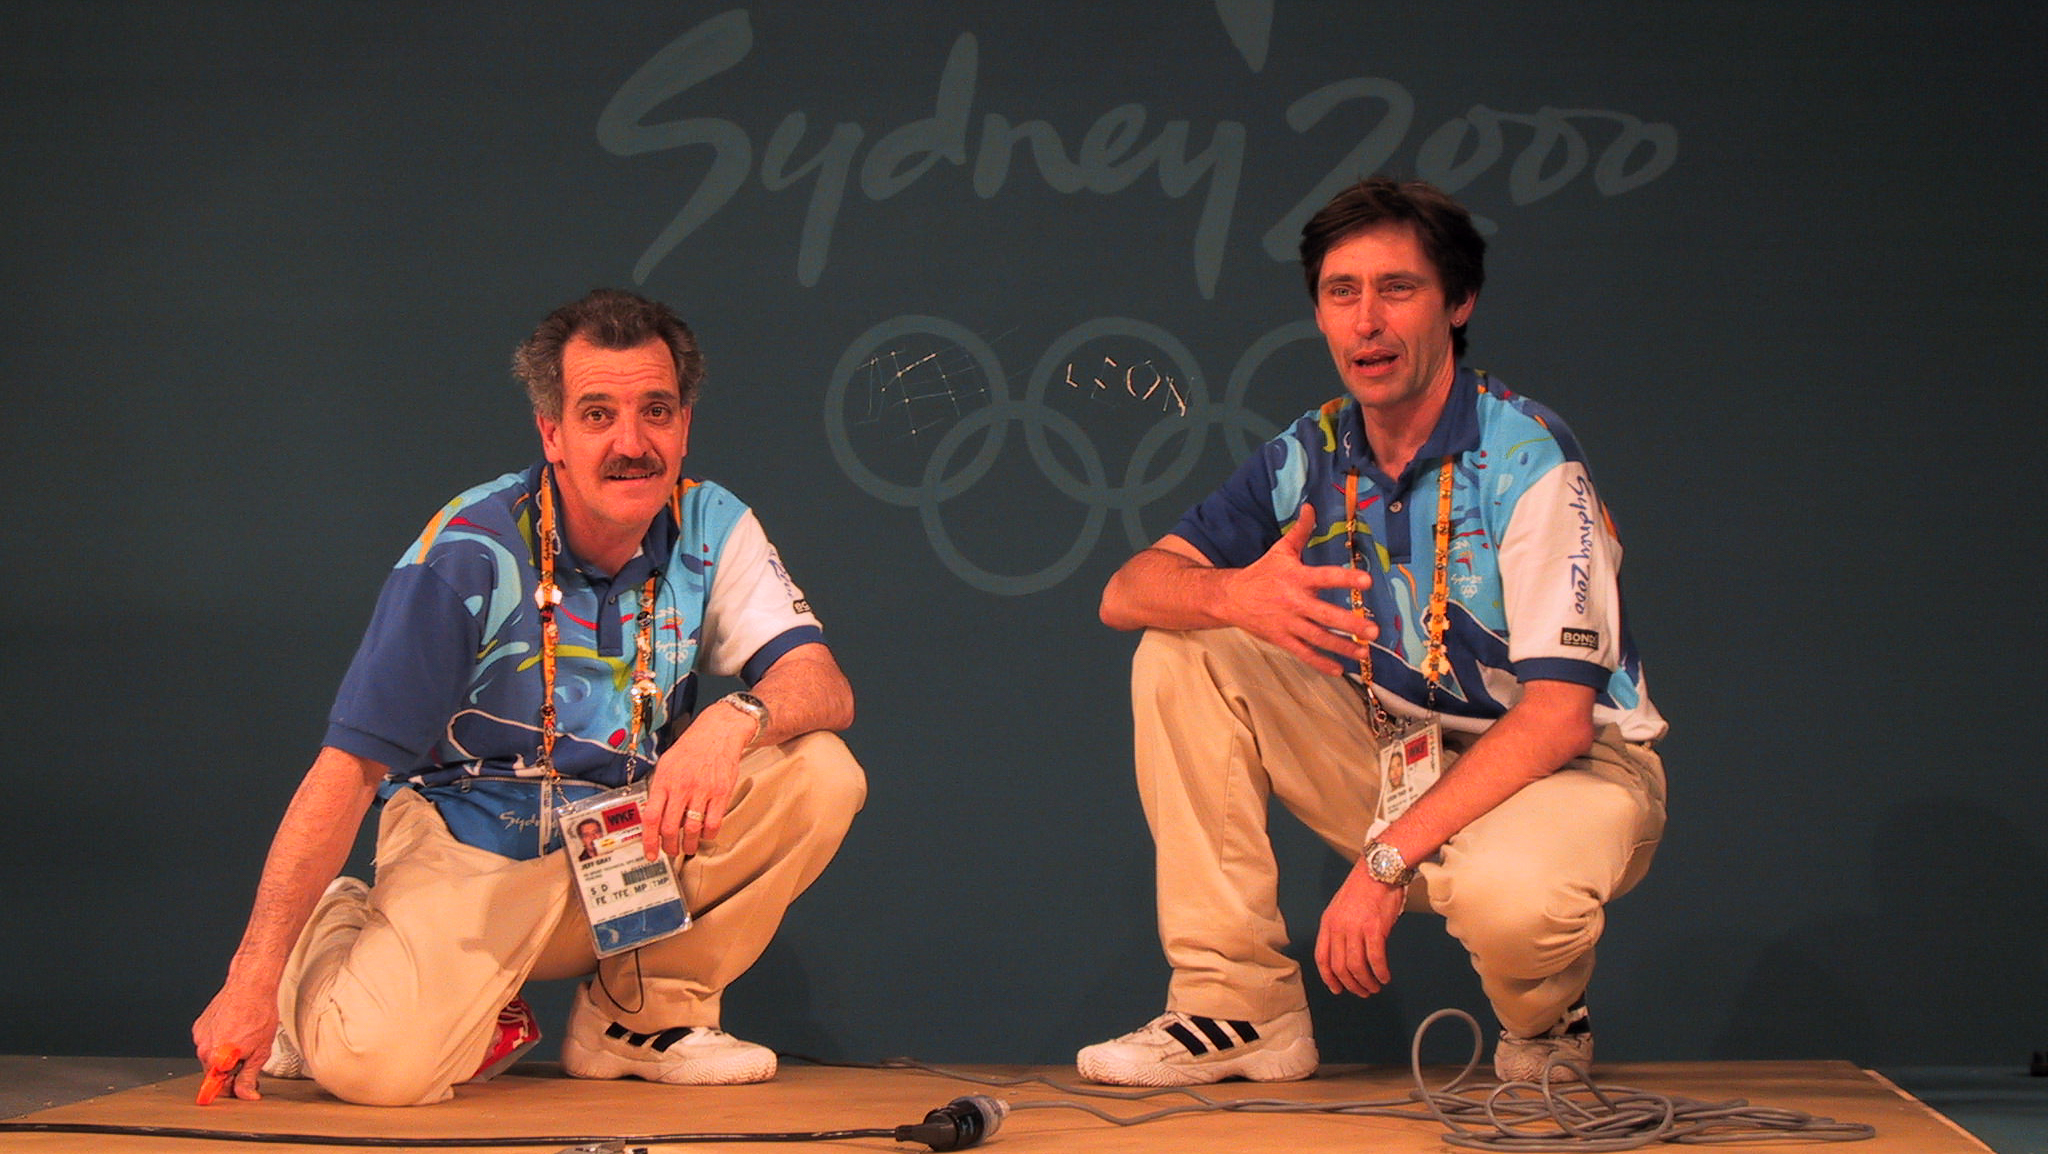 Organisers fencing Sydney 2000 Olympic Games